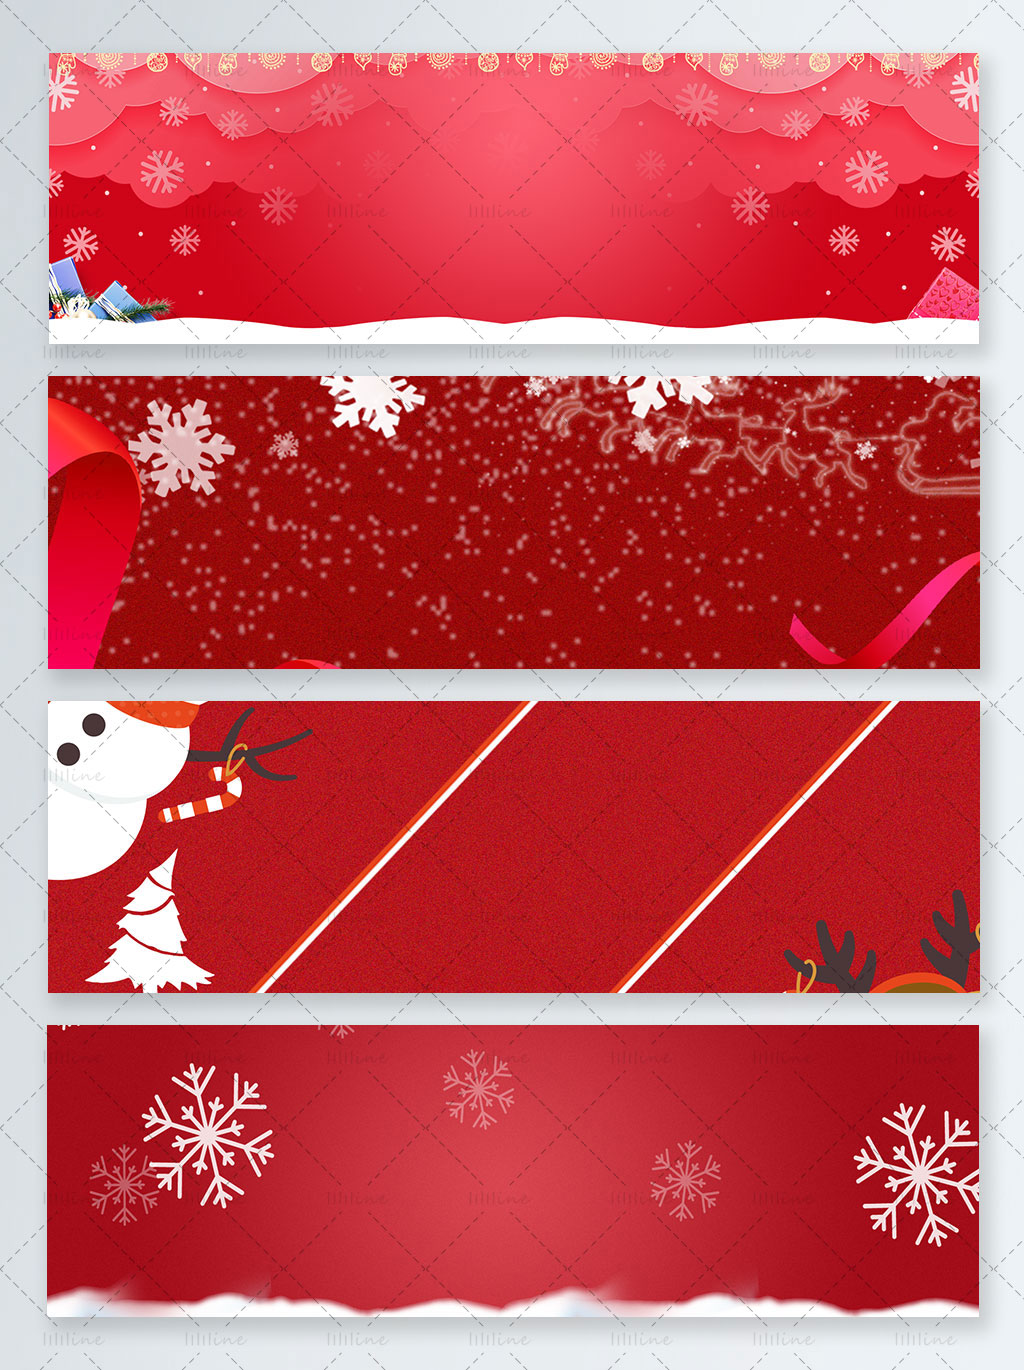 Banner de Navidad psd (4 archivos)